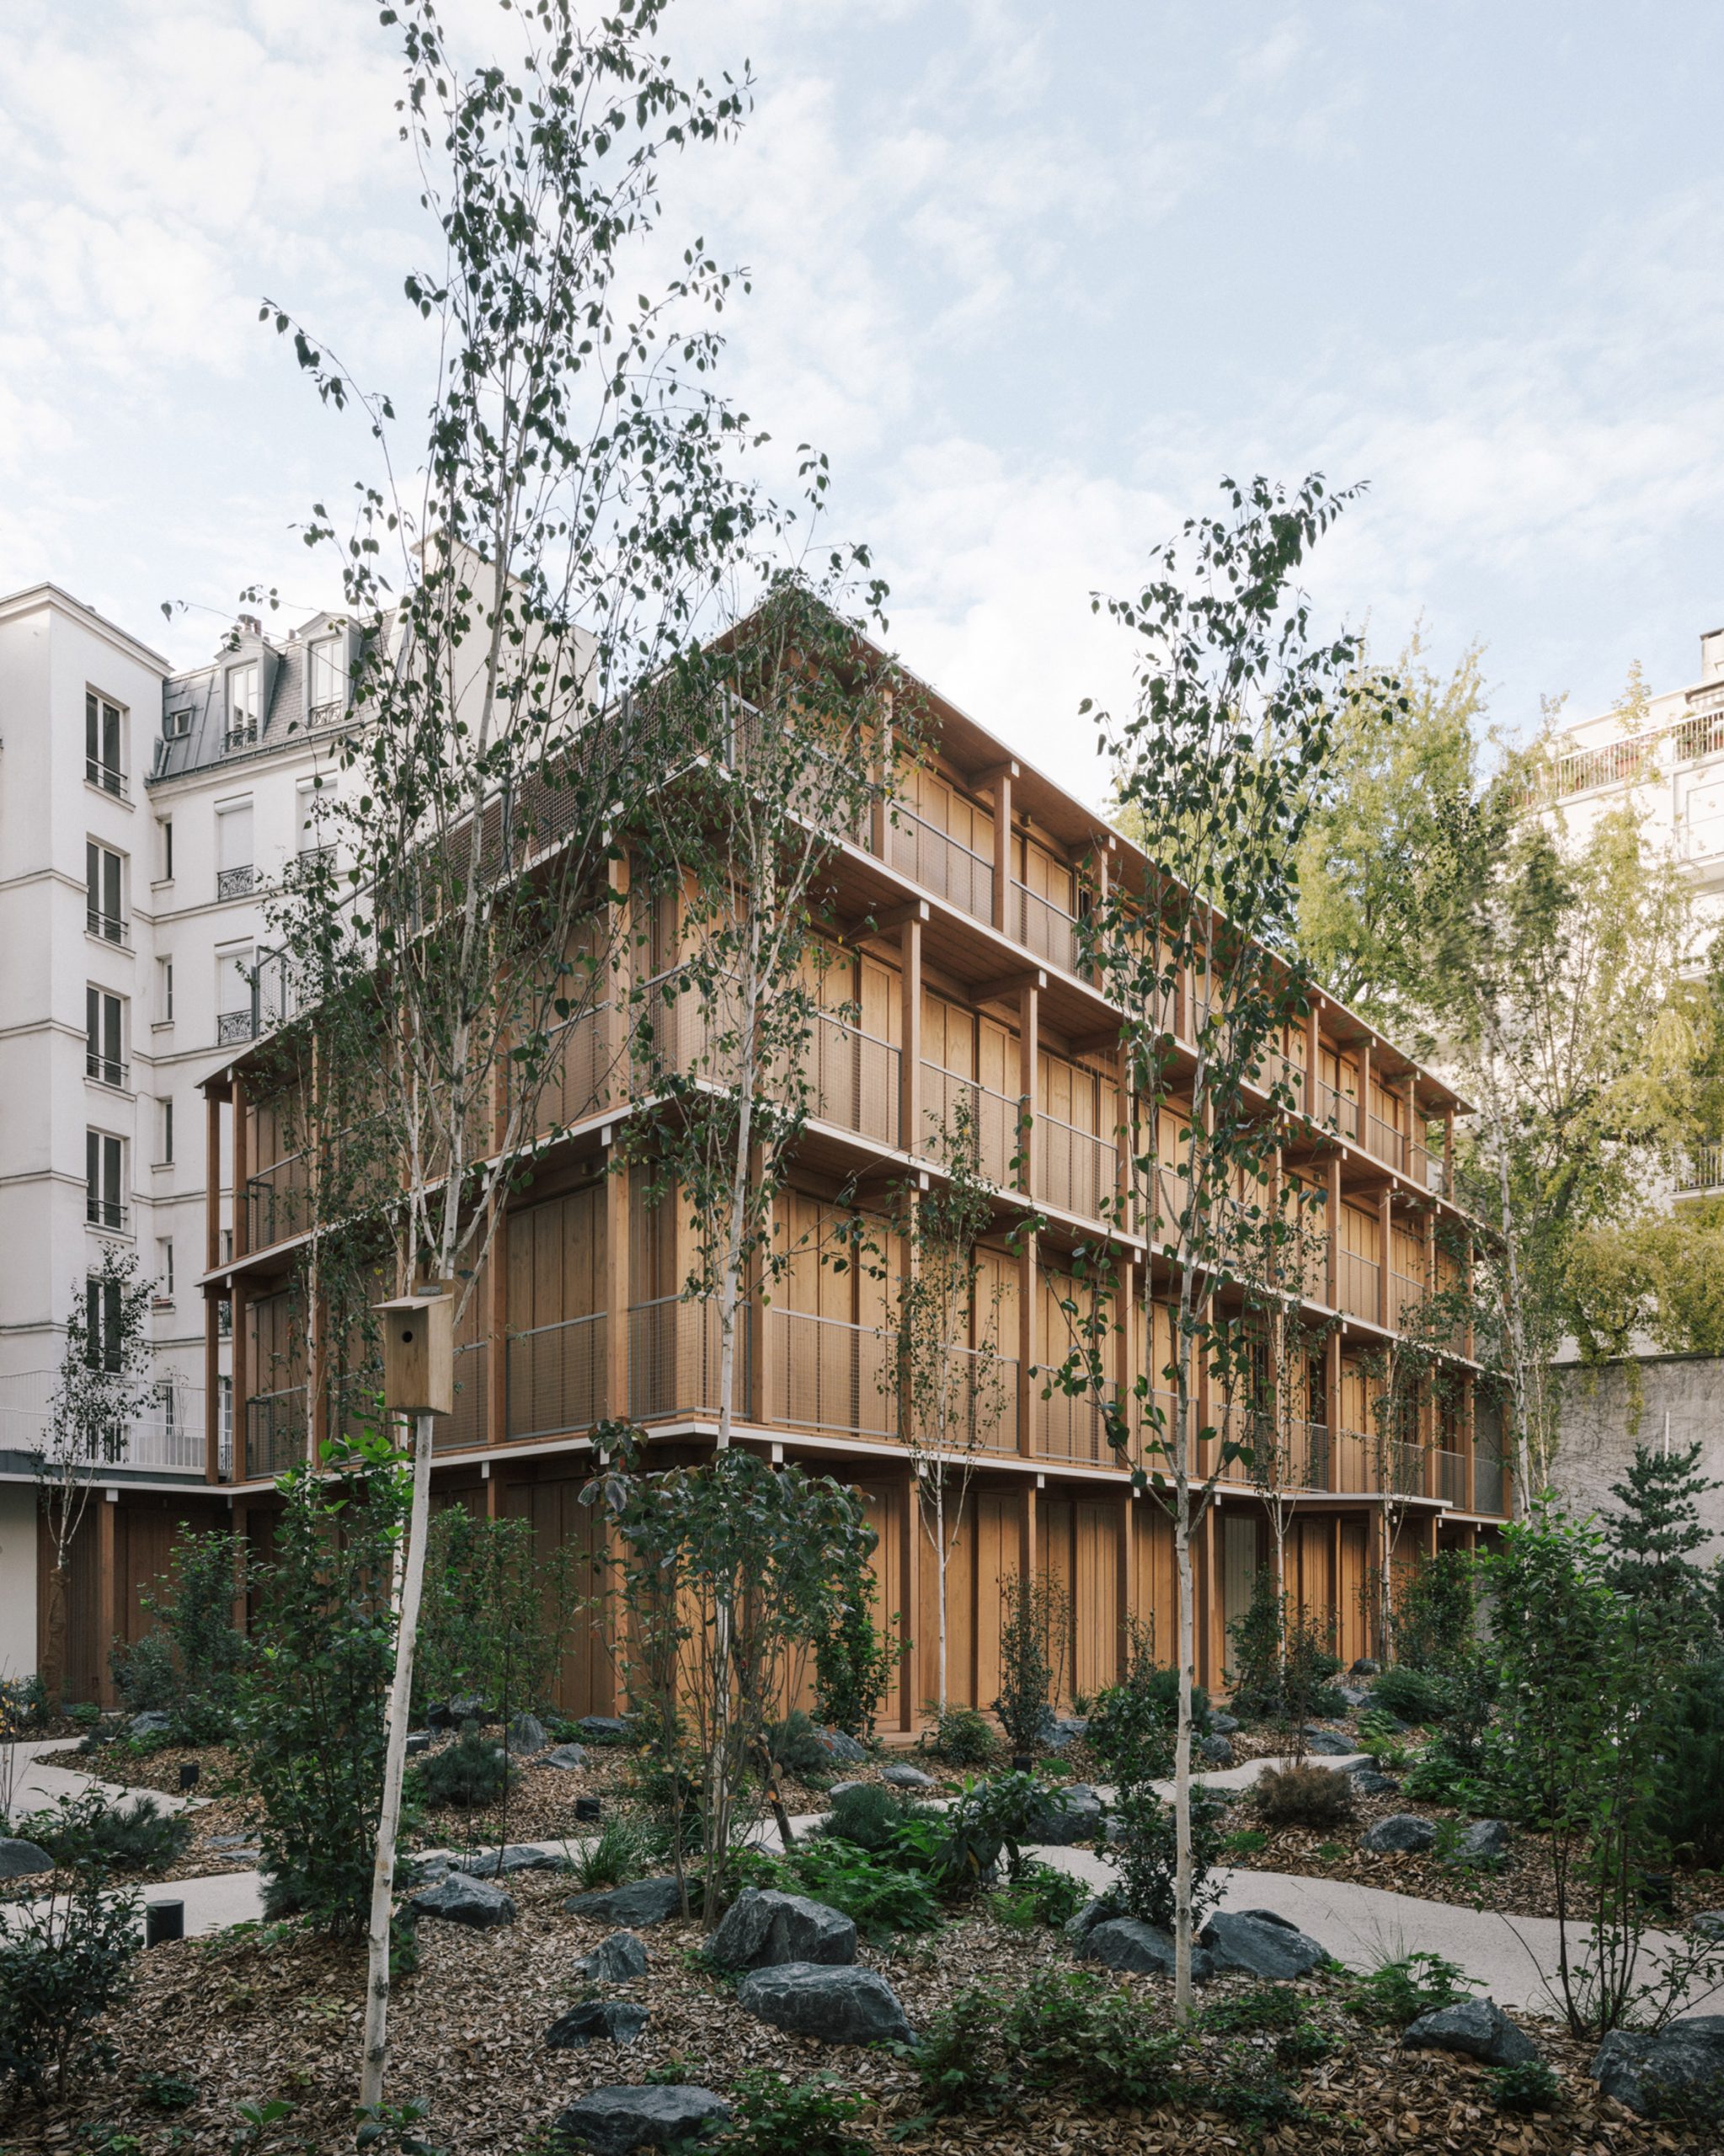 Mars Architectes' building in Paris' 12 arrondissement